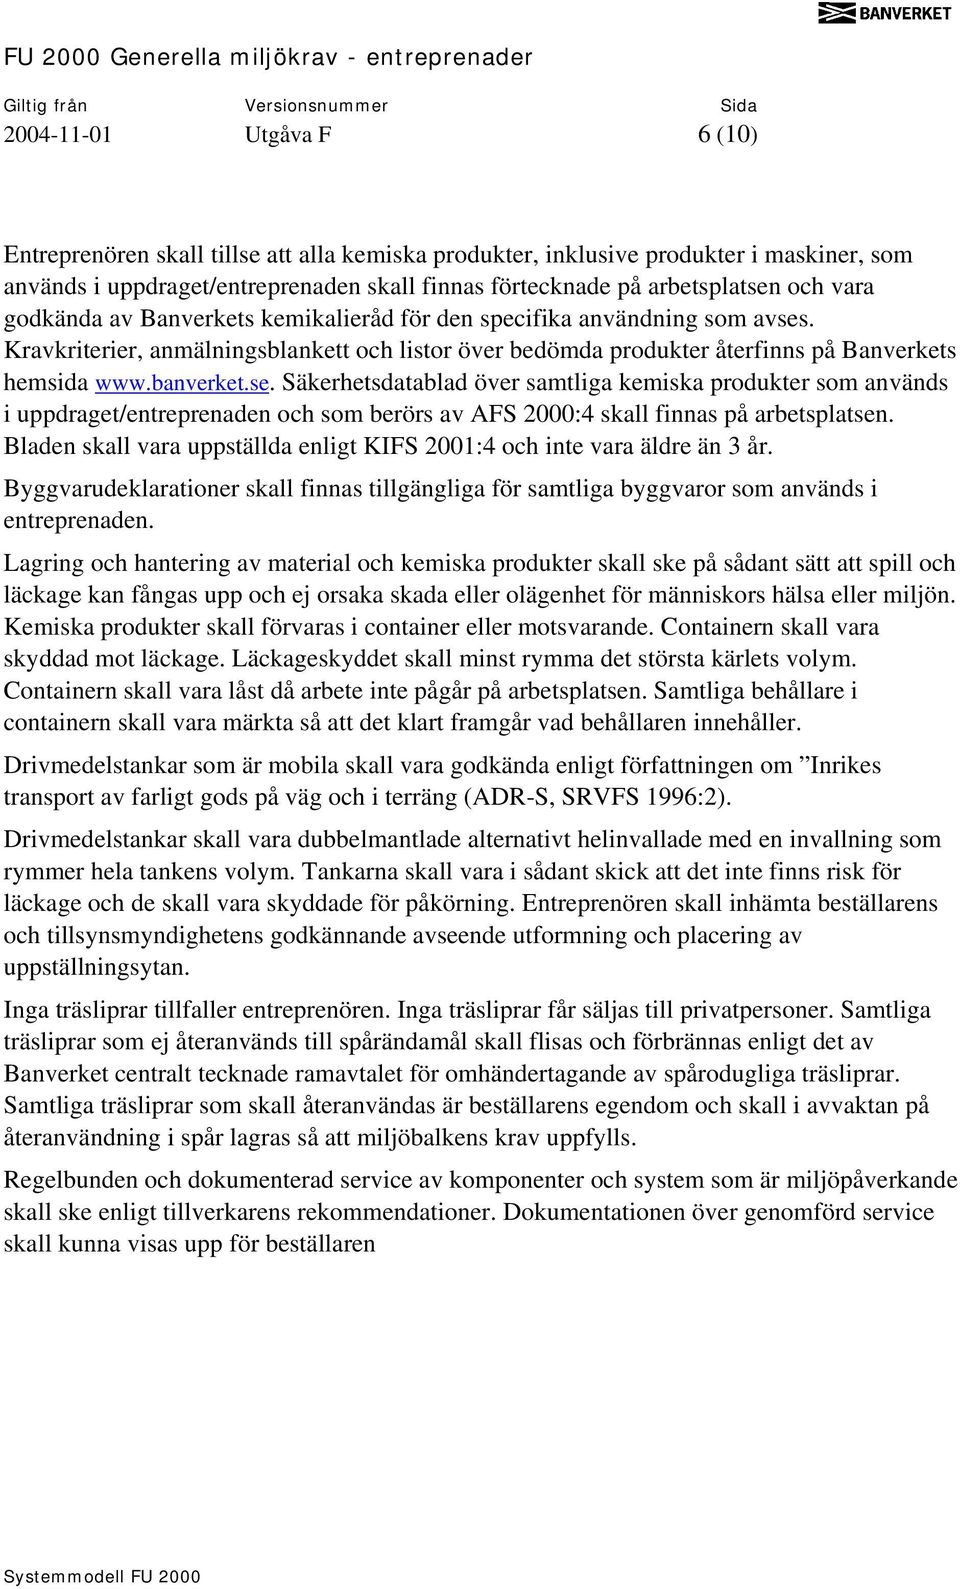 . Kravkriterier, anmälningsblankett och listor över bedömda produkter återfinns på Banverkets hemsida www.banverket.se.